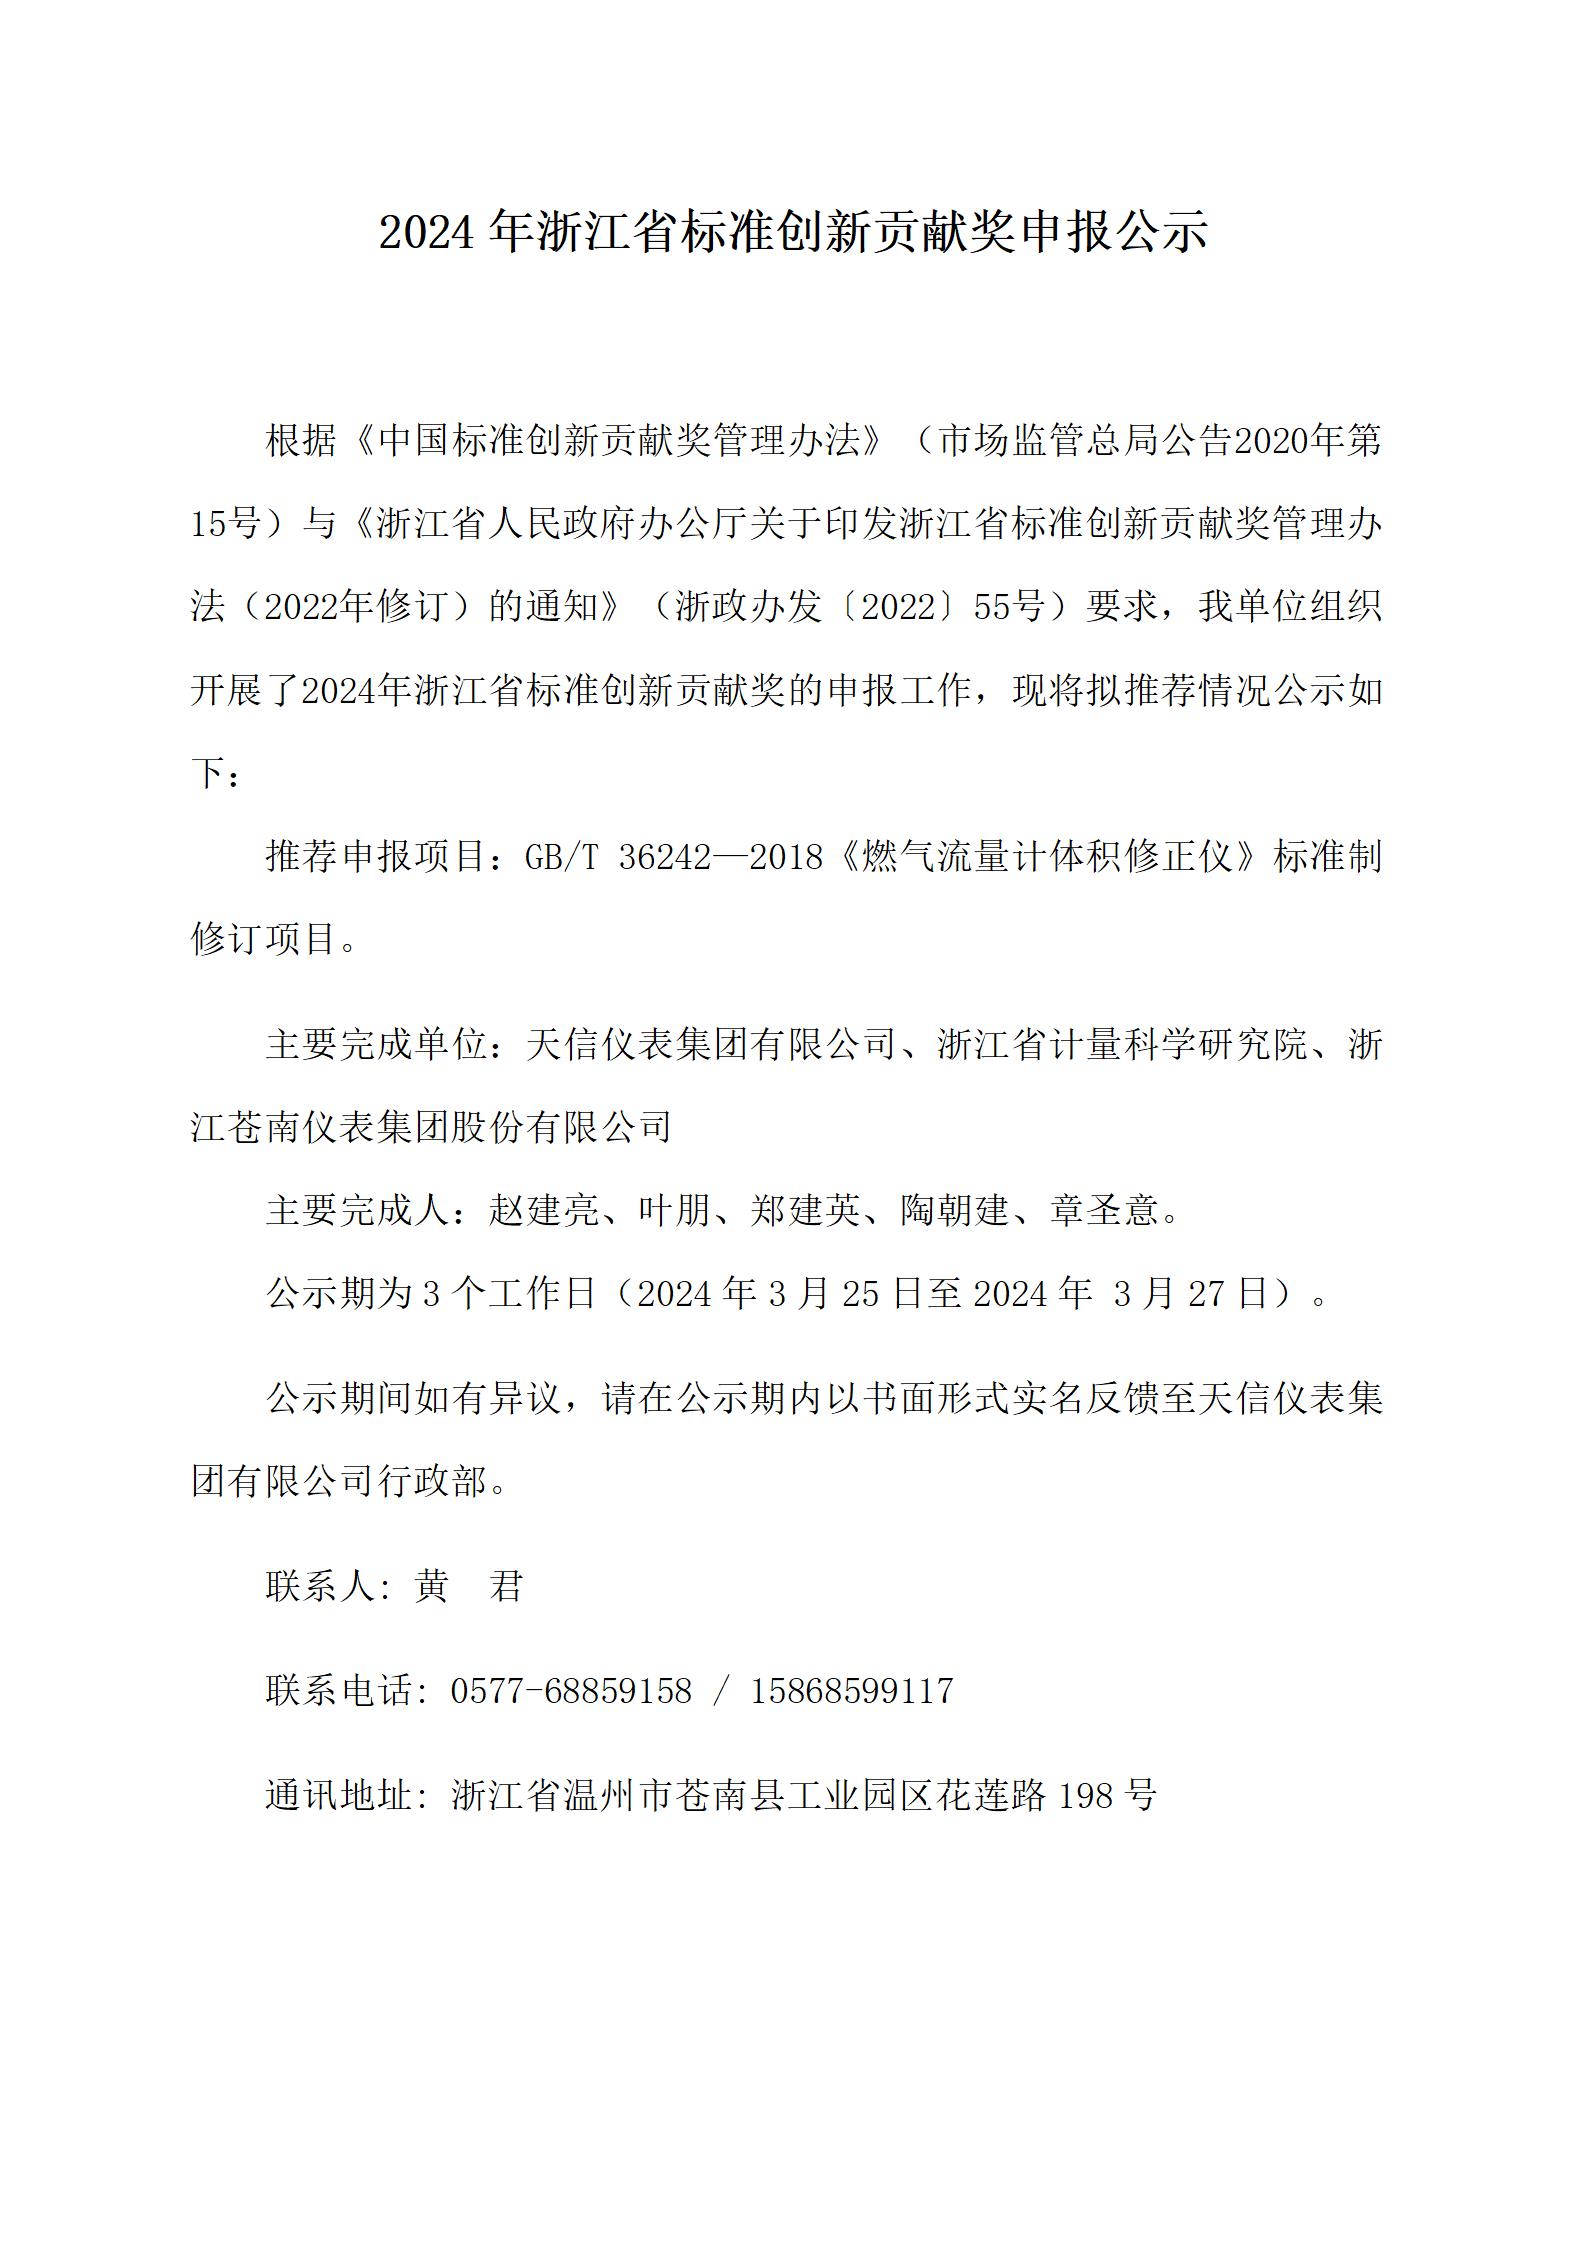 附件2：浙江省標準創新貢獻獎申報公示--20240323（天信版2）_01.jpg